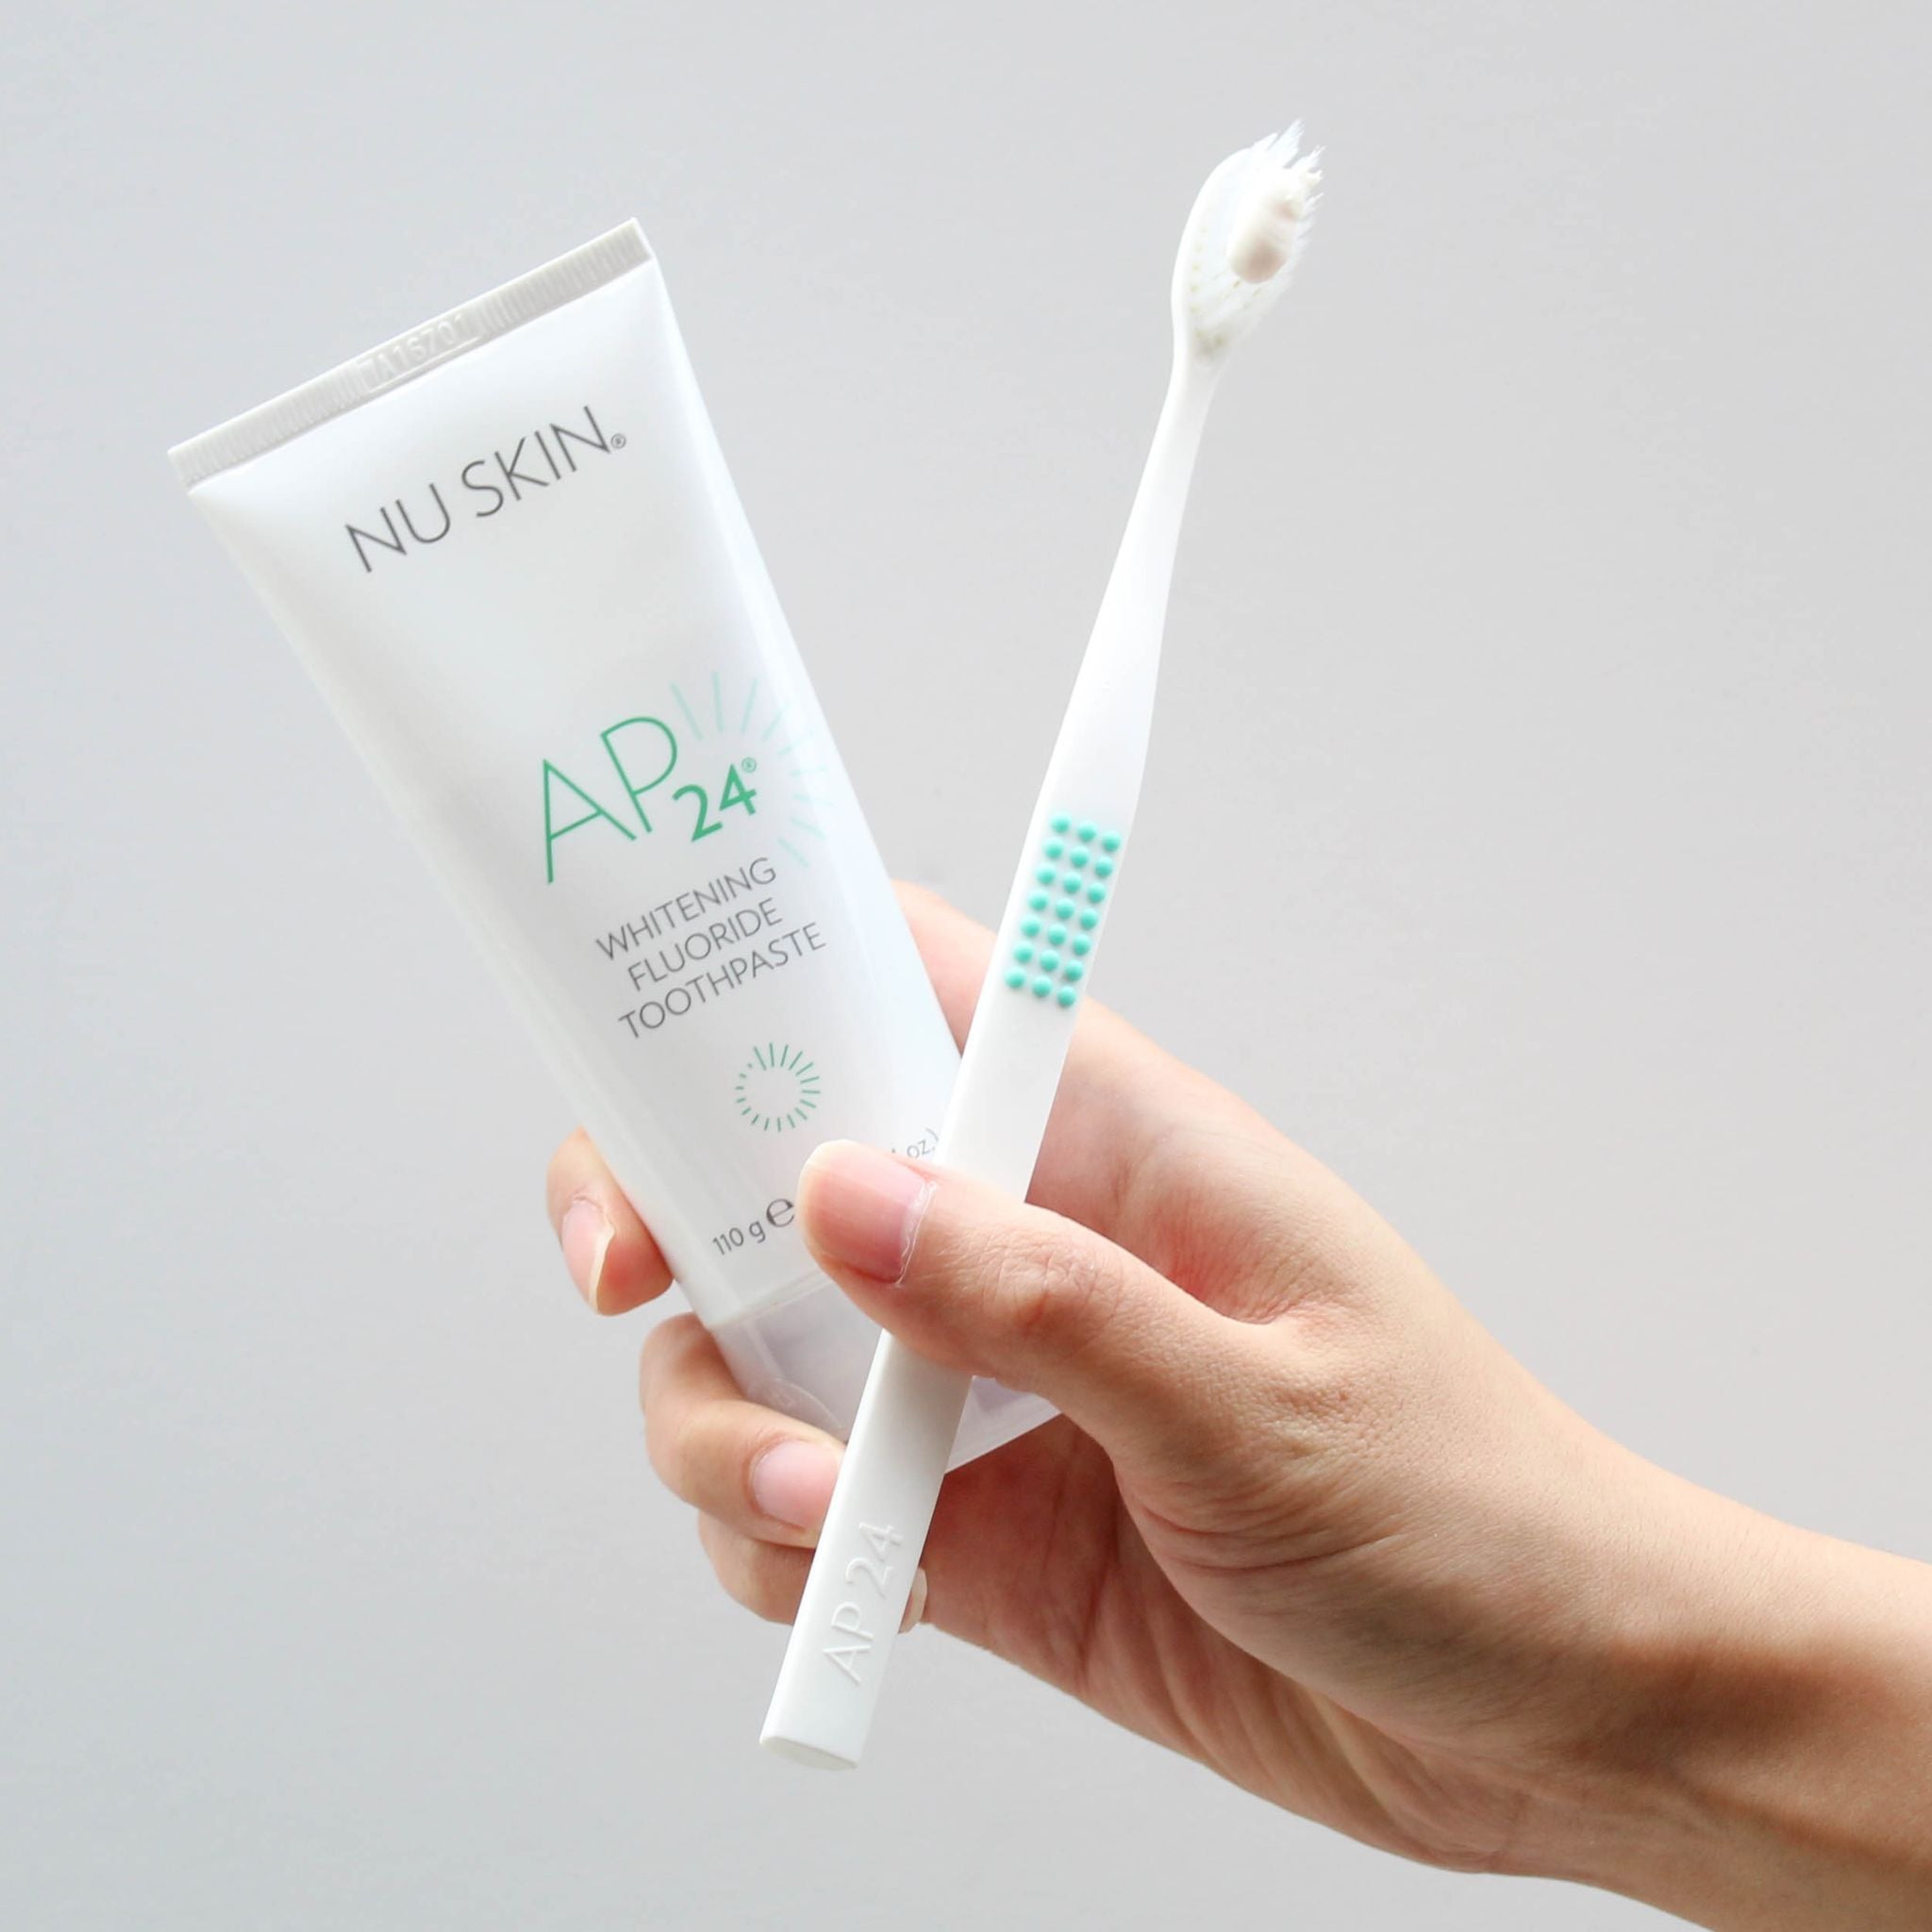 AP 24 Whitening Fluoride Toothpaste (Singapore) - thatnatureworld